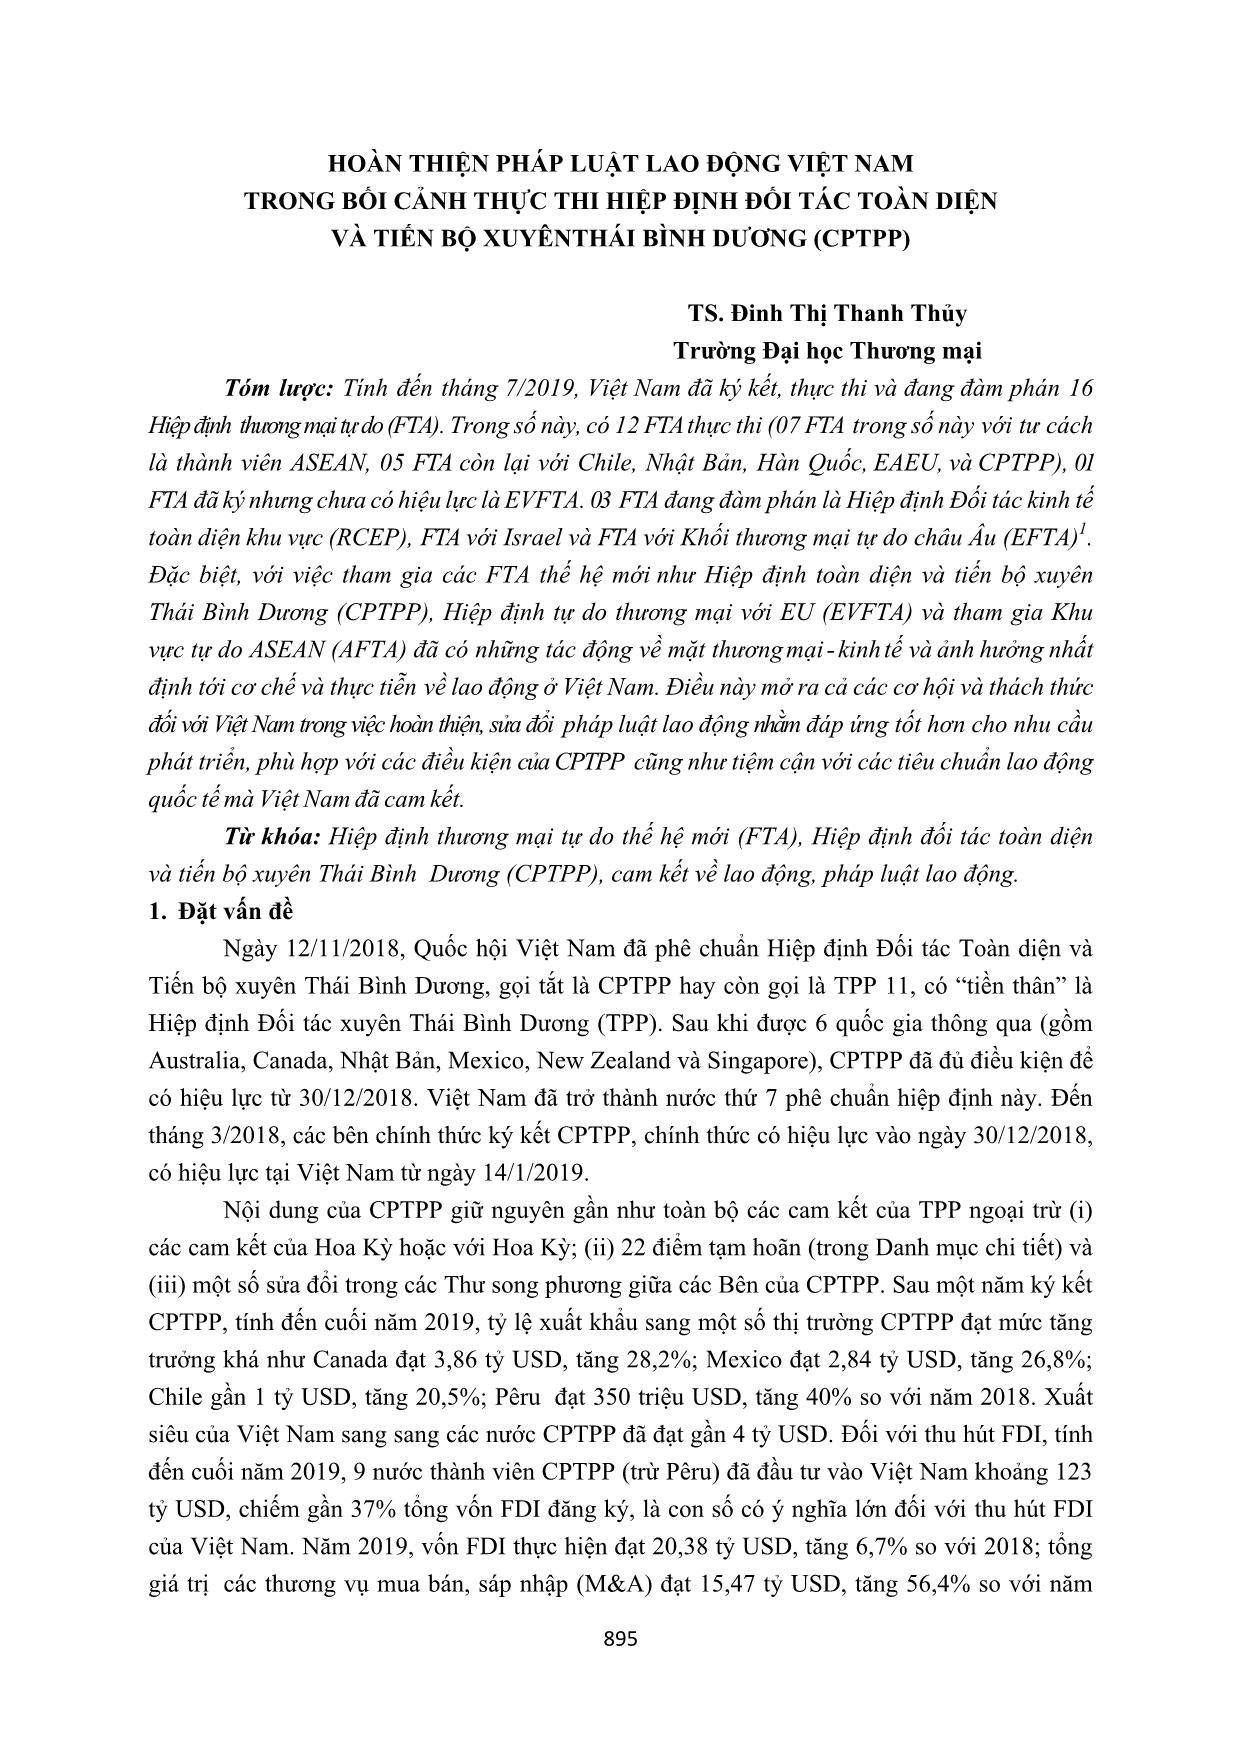 Hoàn thiện pháp luật lao động Việt Nam trong bối cảnh thực thi hiệp định đối tác toàn diện và tiến bộ xuyên Thái Bình Dương (CPTPP) trang 1